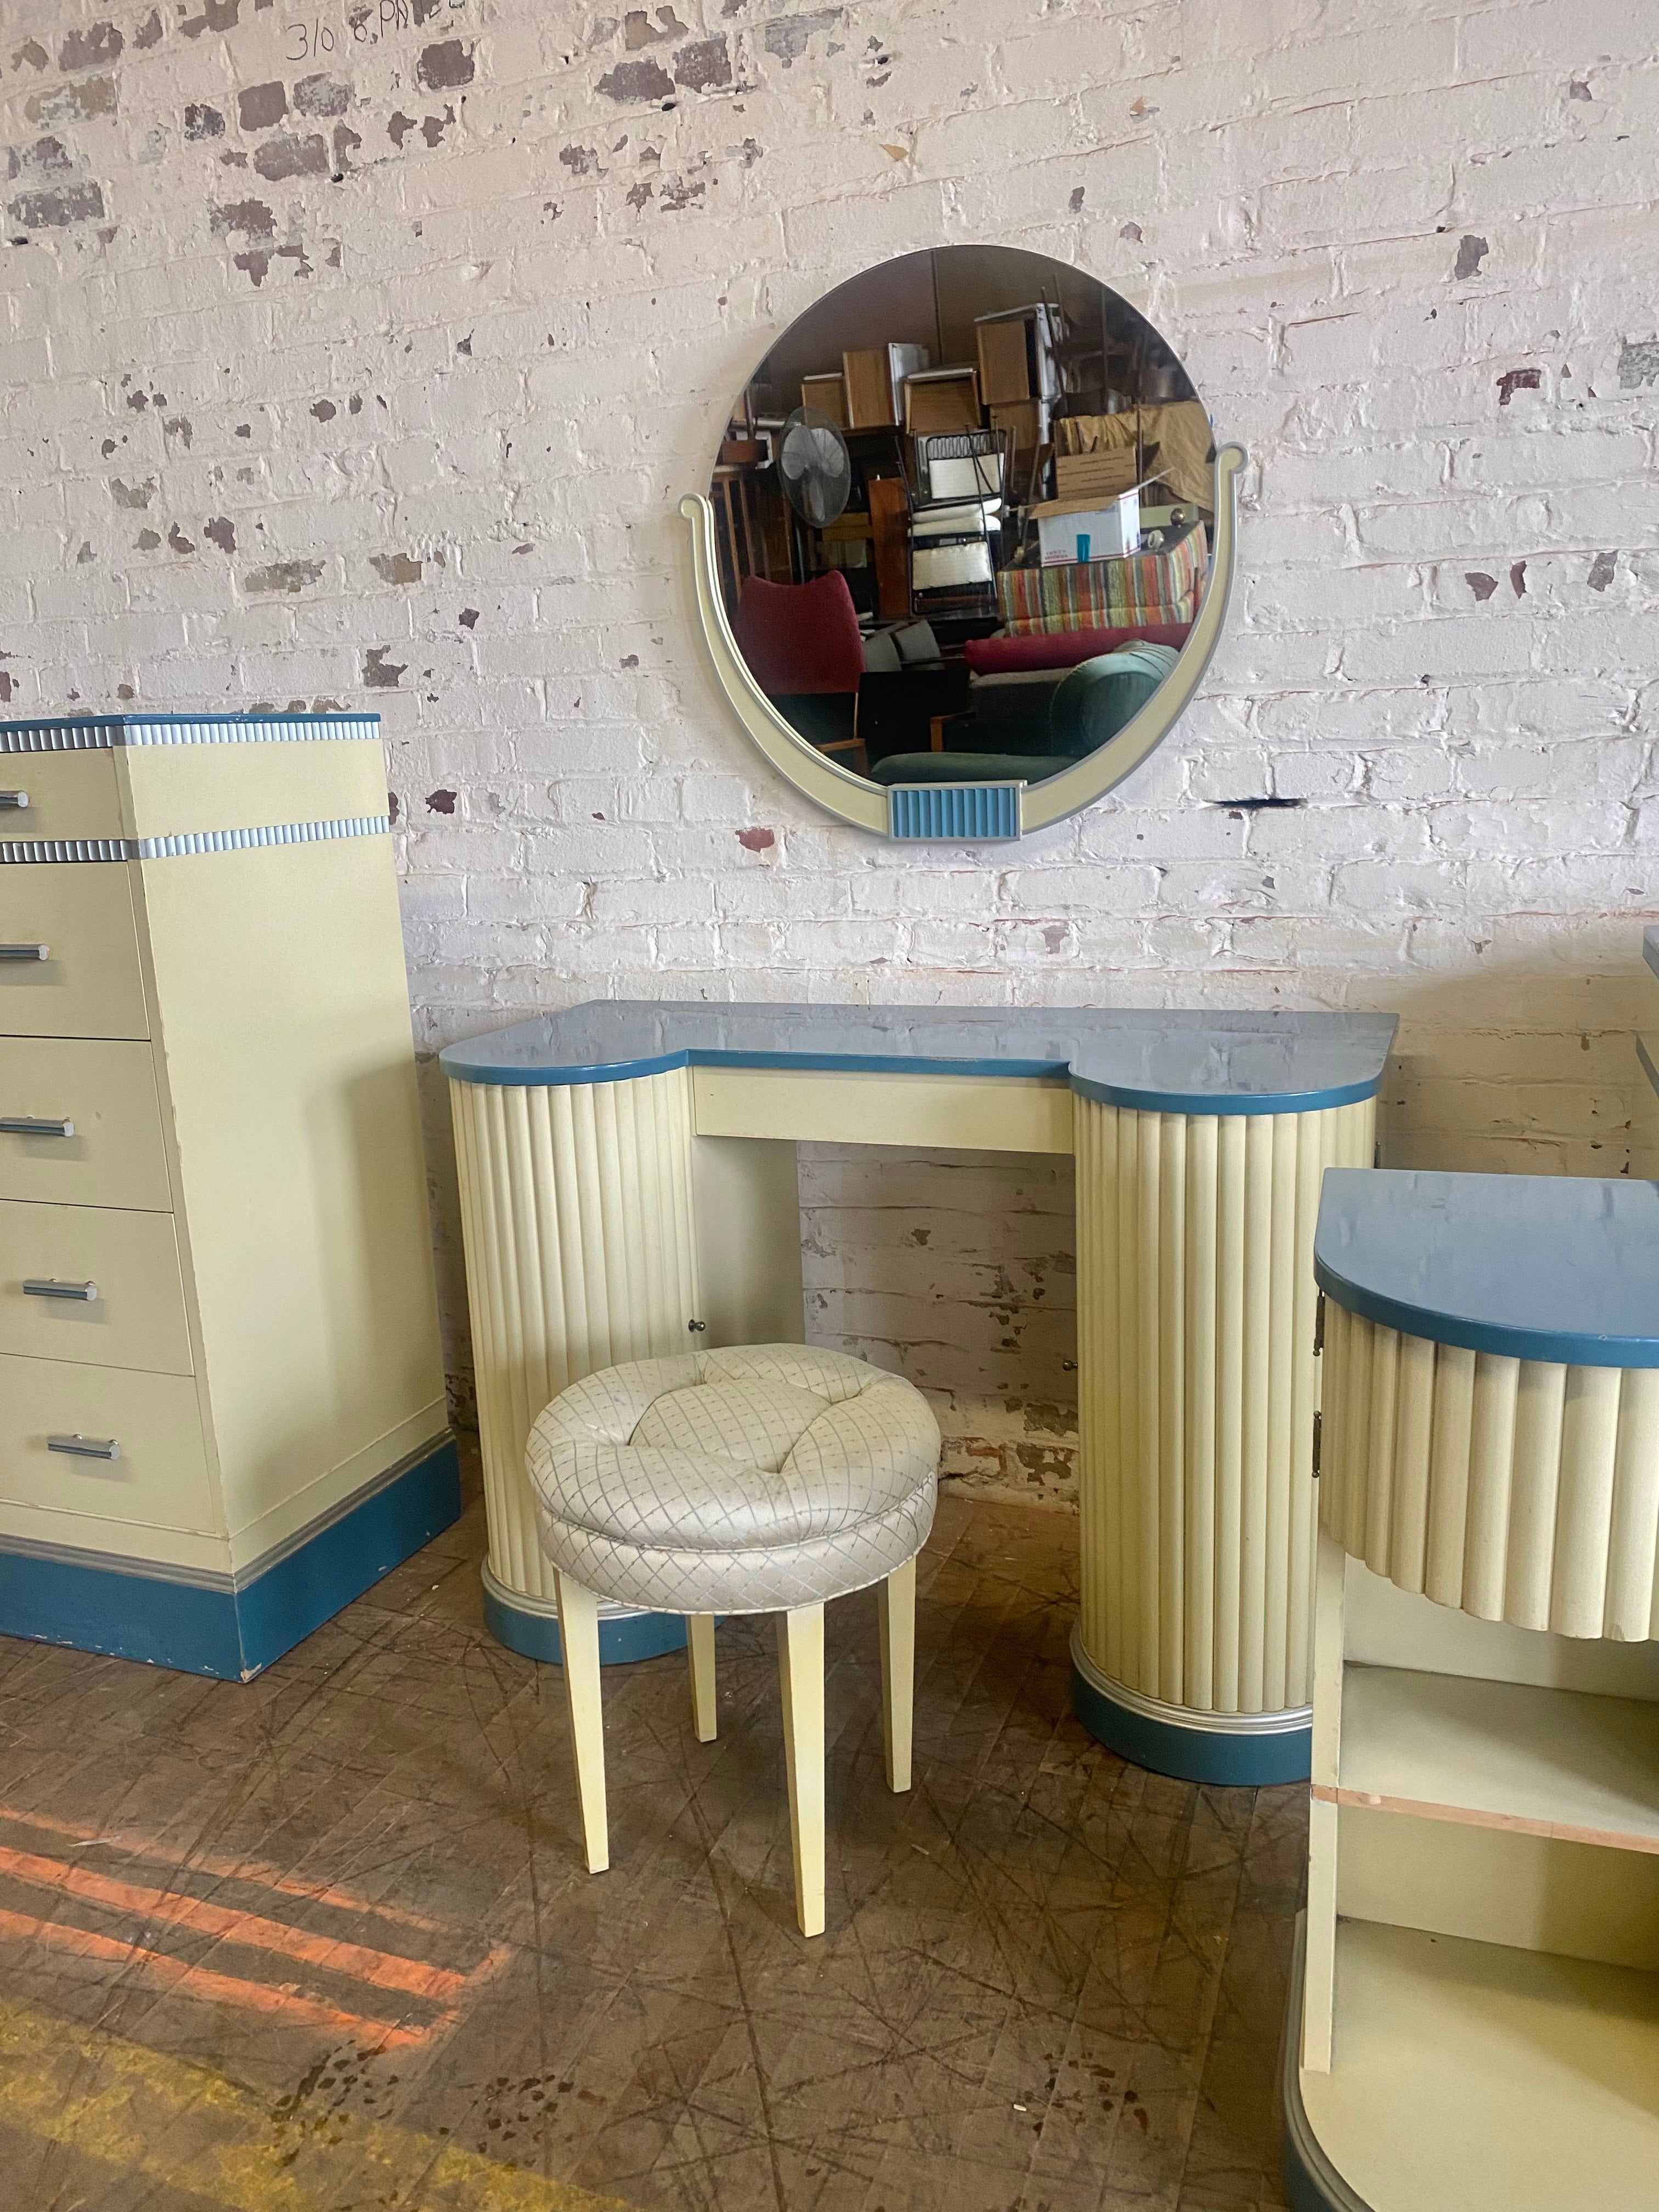 Atemberaubende Art-Deco-Schlafzimmer-Suite, hergestellt von Kittinger Furniture Co. Buffalo New York. Die 1934 eingeführte Doric-Linie war die erste von ihnen. High Style Deco, zweifarbig in Creme und Blau lackiert. Sehr selten und ungewöhnlich zu